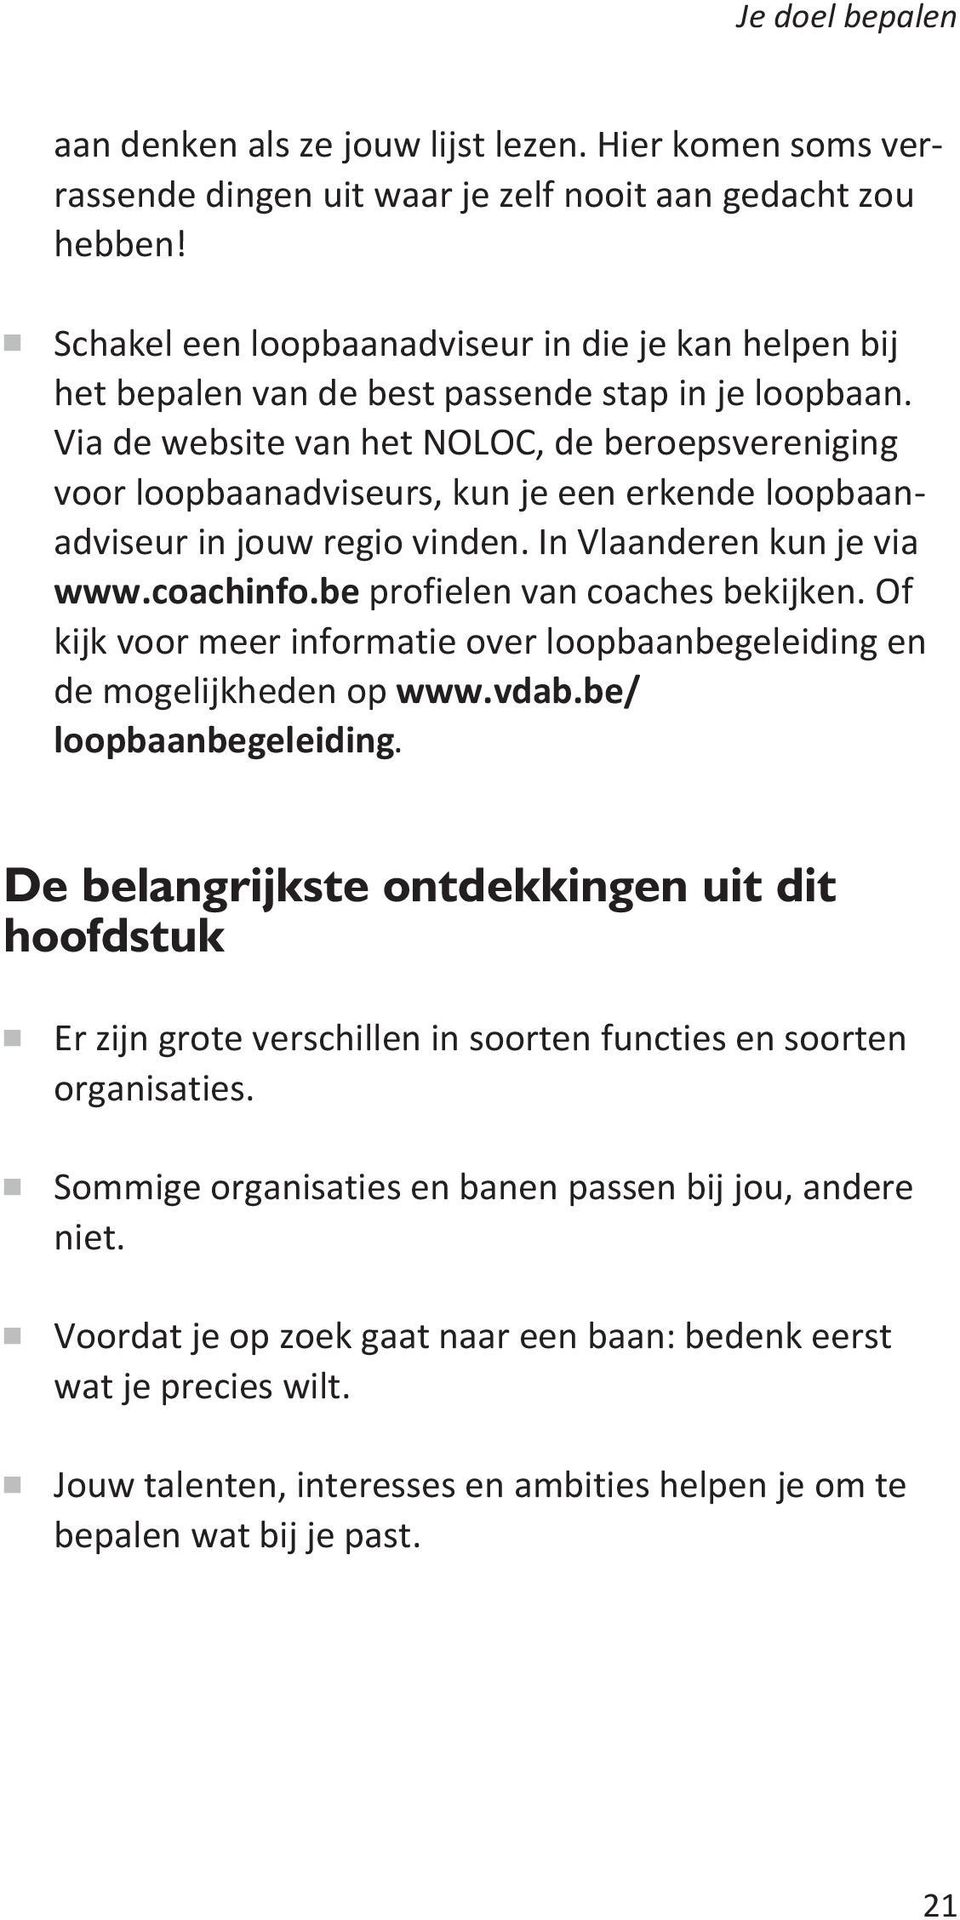 Via de website van het NOLOC, de beroepsvereniging voor loopbaanadviseurs, kun je een erkende loopbaanadviseur in jouw regio vinden. In Vlaanderen kun je via www.coachinfo.